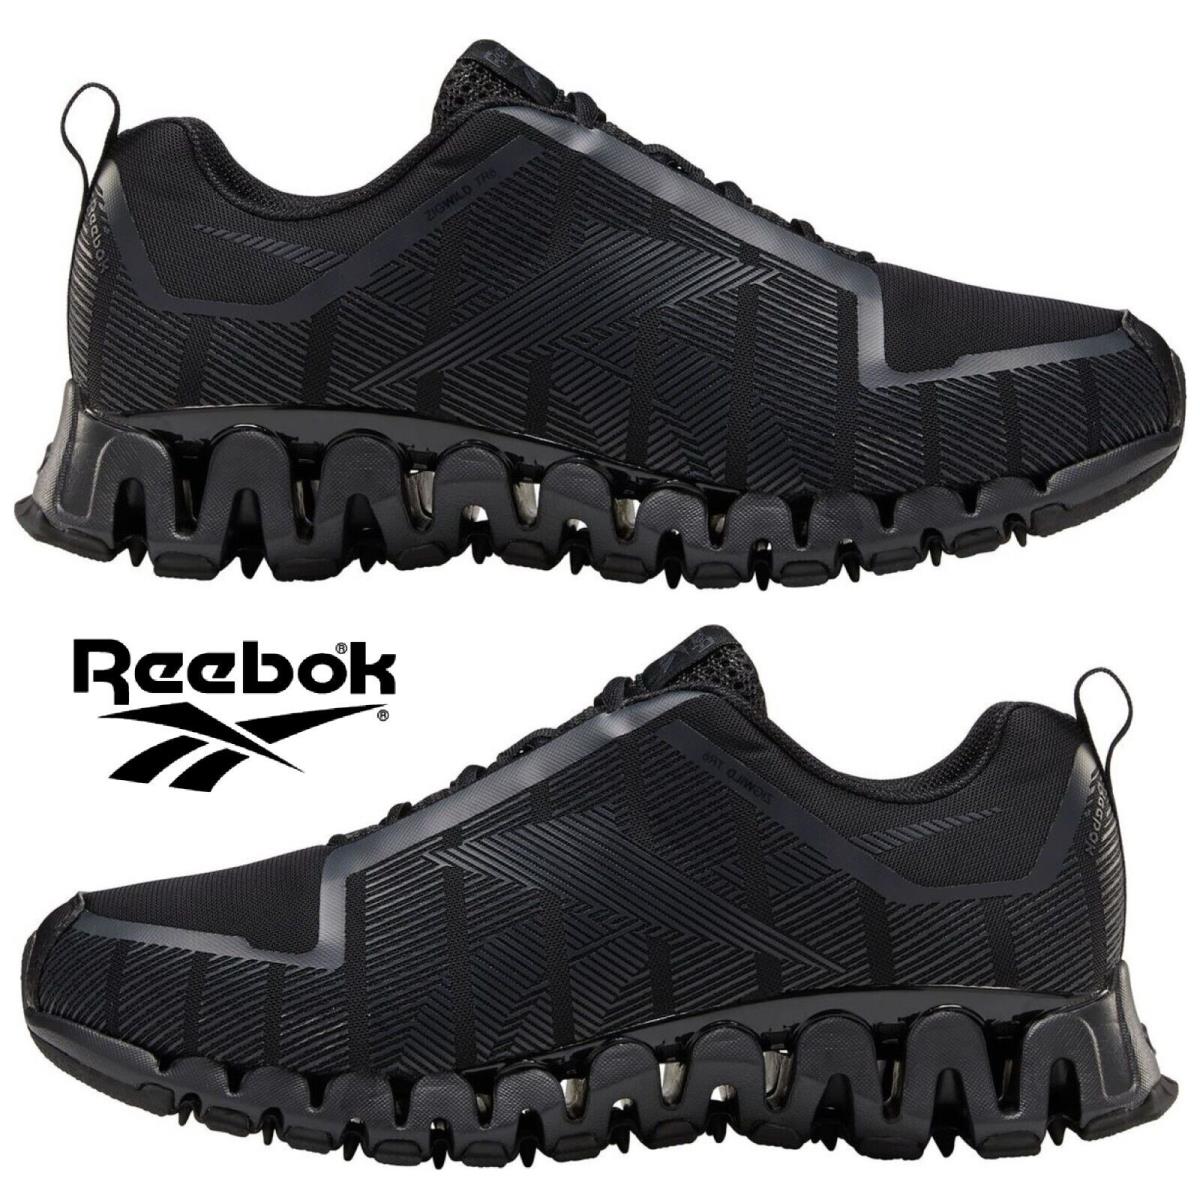 Reebok Zigwild Trail 6 Running Shoes Men`s Sneakers Lightweight Hiking Walking - Black, Manufacturer: Black/Grey/White